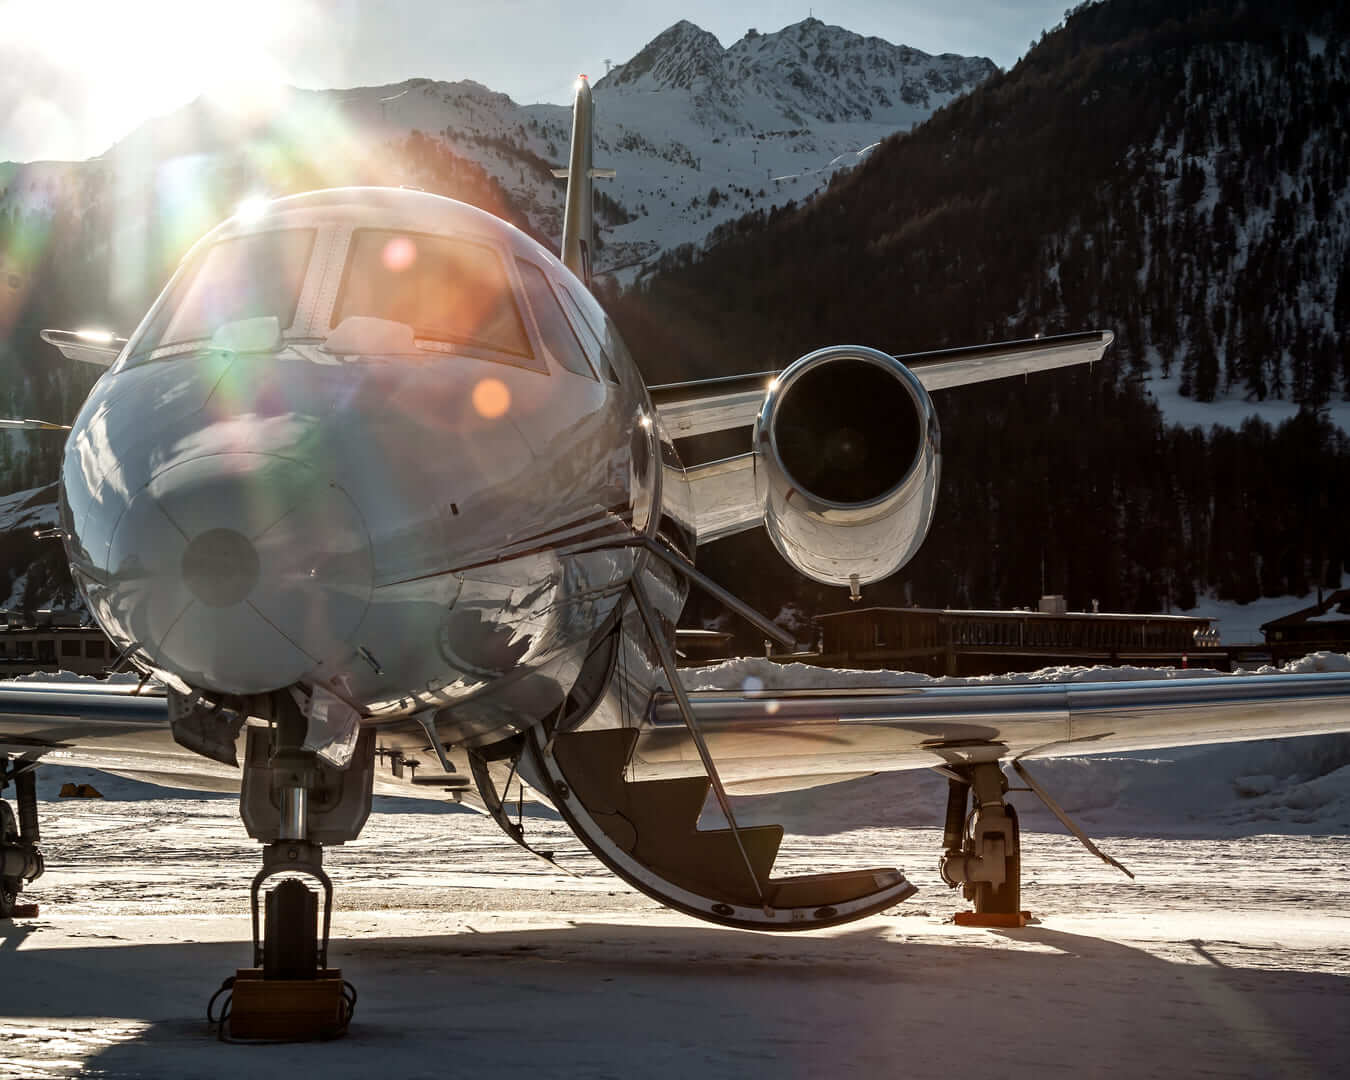 Припаркован в аэропорту Самедан Энгадин над снежным парком в последний день. Частный самолет bizjet, используемый бизнесменами, VIP-персонами и богатыми людьми для путешествий по всему миру.